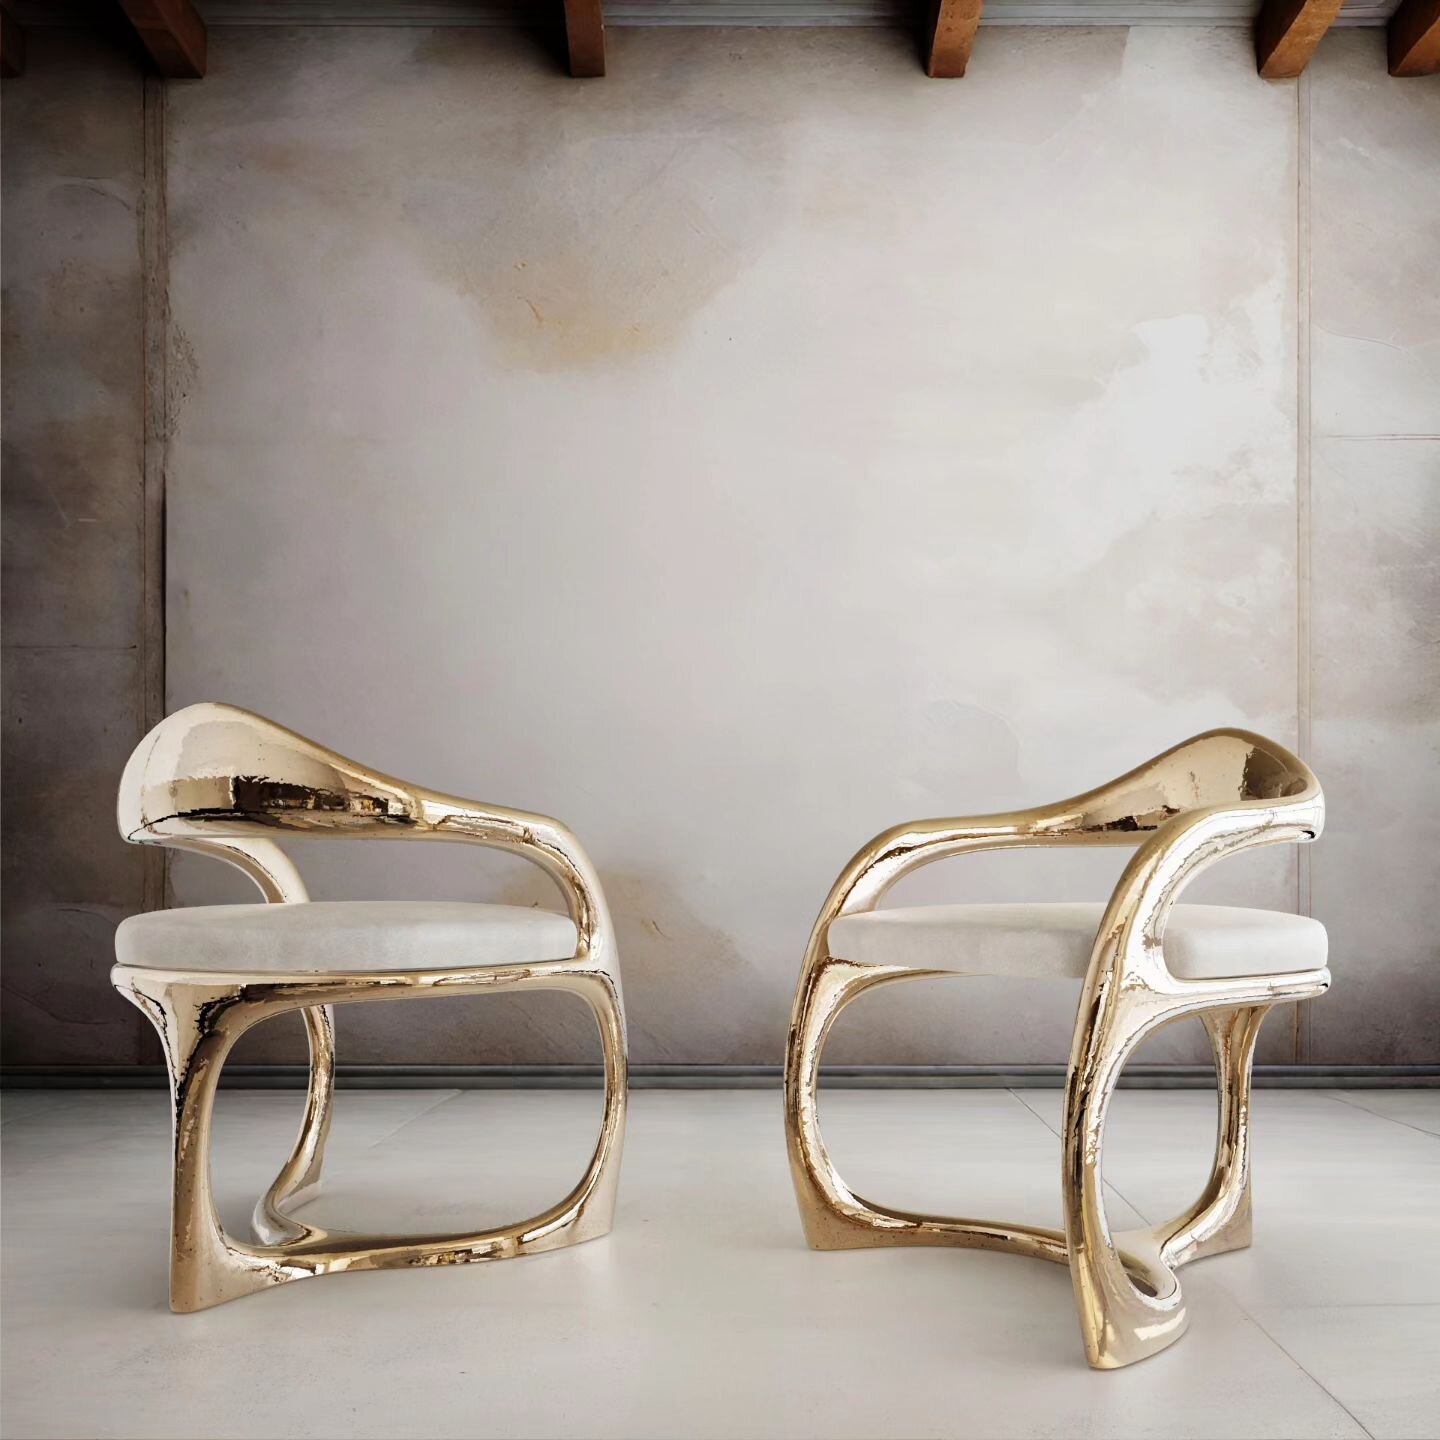 Reuleaux Chair - Bronze
.
.
.
.
.
.
.

#artfurniture #polished #metal #chairdesign #metalart #chair #industrialdesign #bronze  #furnituredesign #exclusive  #limitededition #lounge #luxury #architecture #sculpture #welding #metalfabrication #contempor